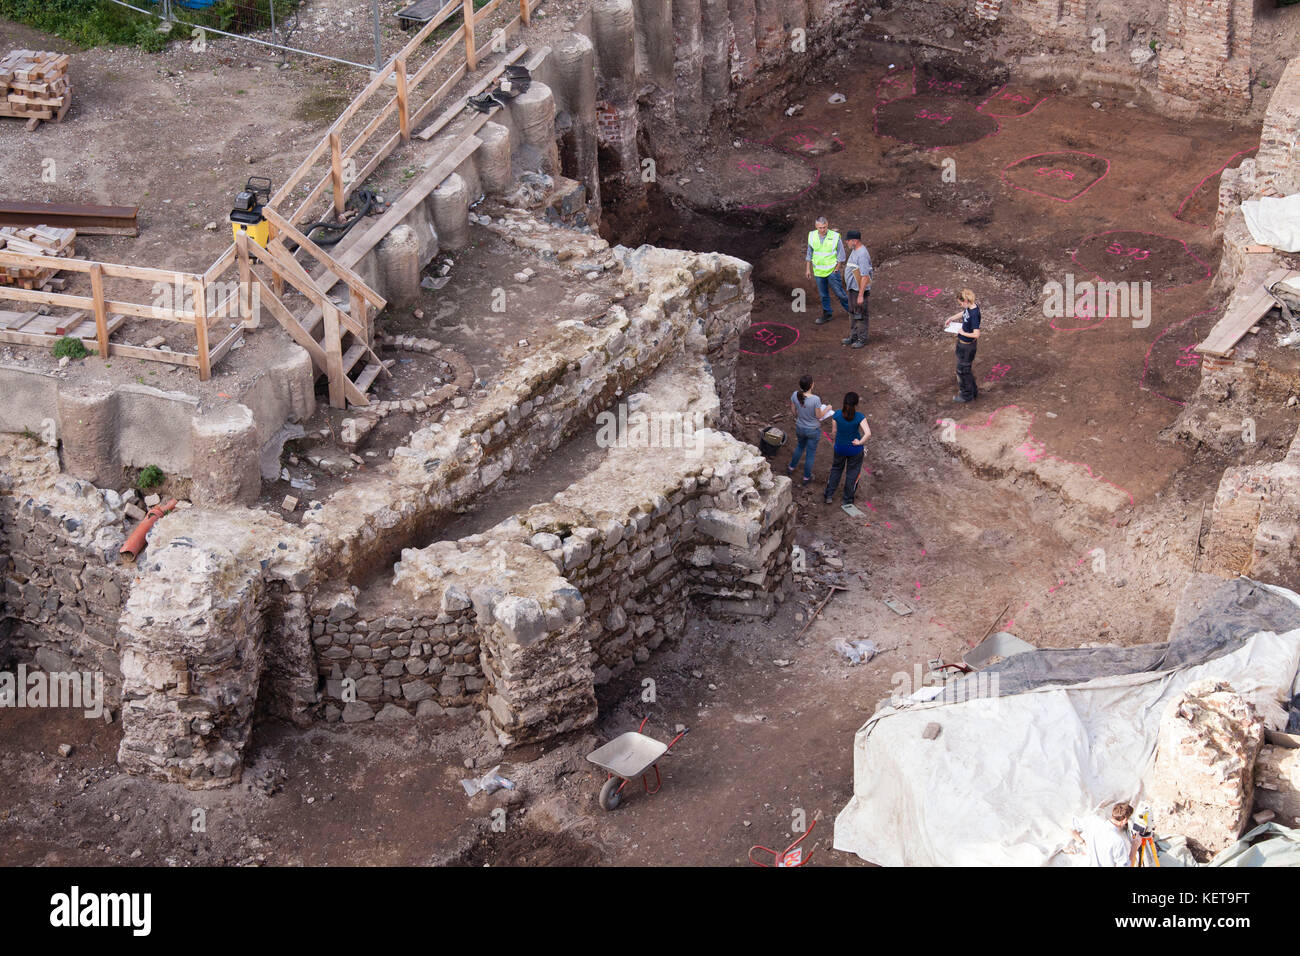 Europa, Deutschland, Köln, auf einer Baustelle im Antonitre-Viertel wurden die Reste eines Steinhauses aus den Anfängen Kölns gefunden. Eur Stockfoto